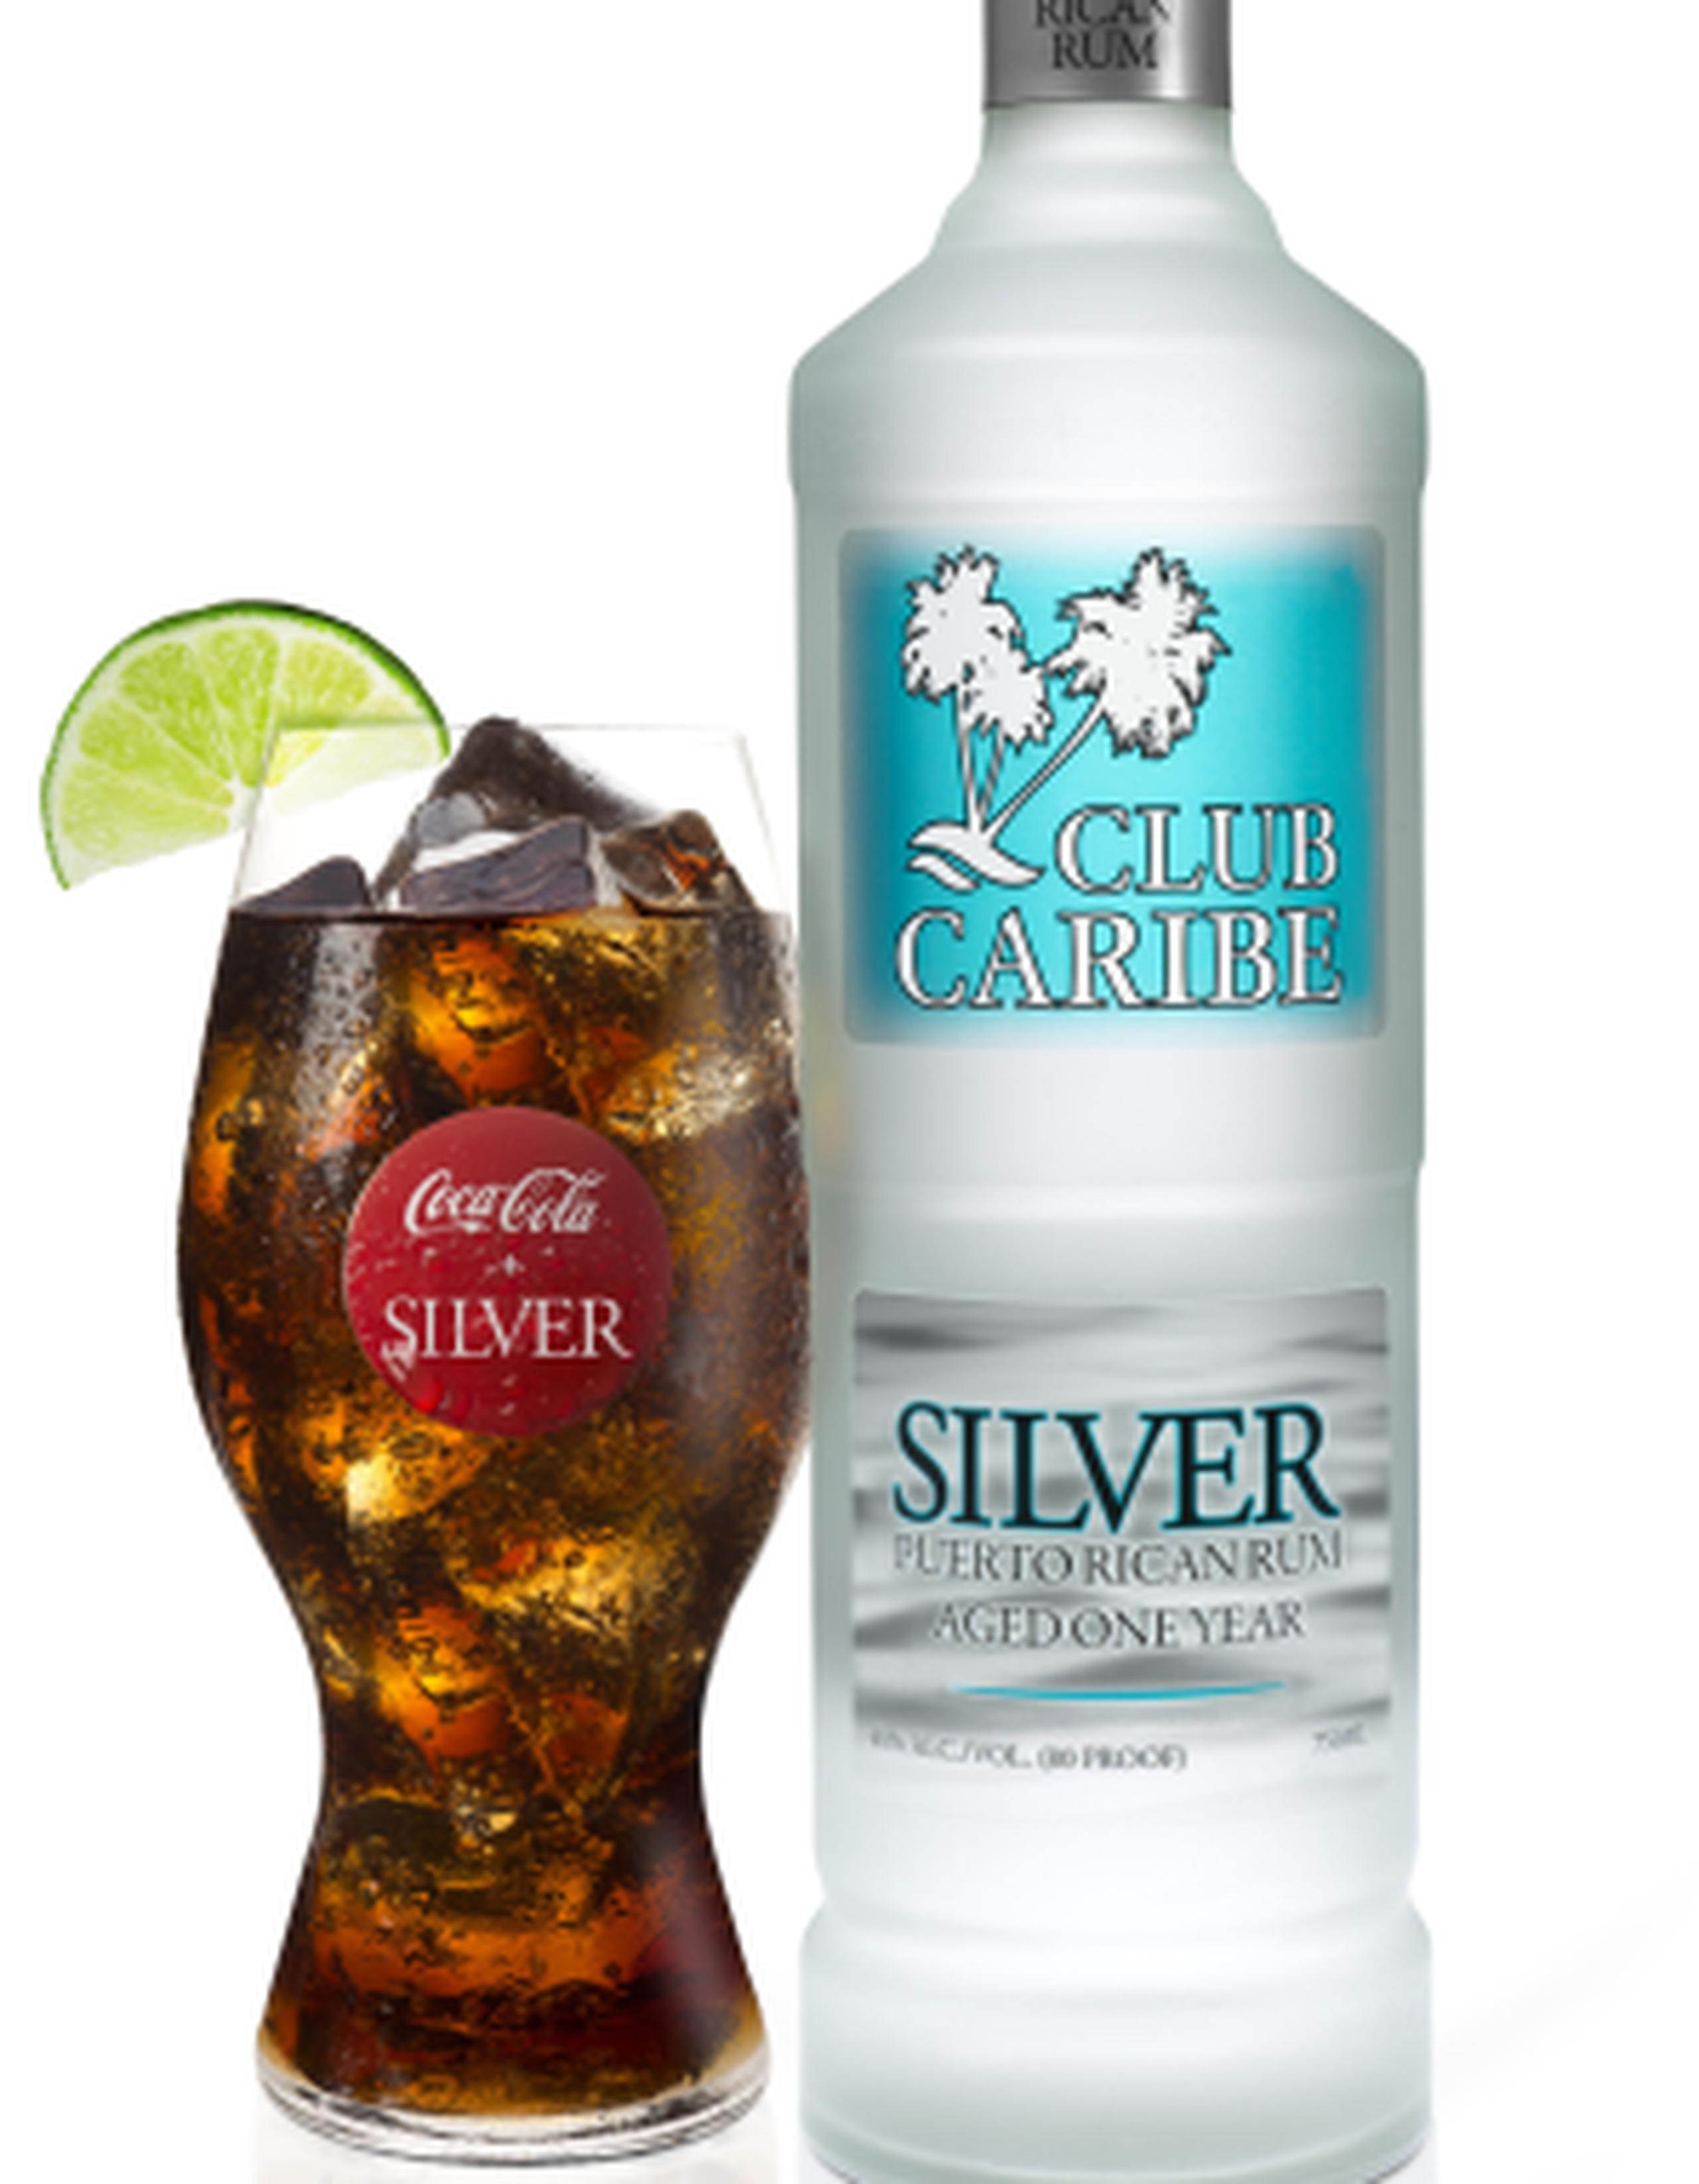 Club Caribe Silver se une a la familia de sabores de rones Club Caribe de Coco, Limón, Raspberry y Piña, que se deja en añejo durante un año. (Suministrada)
